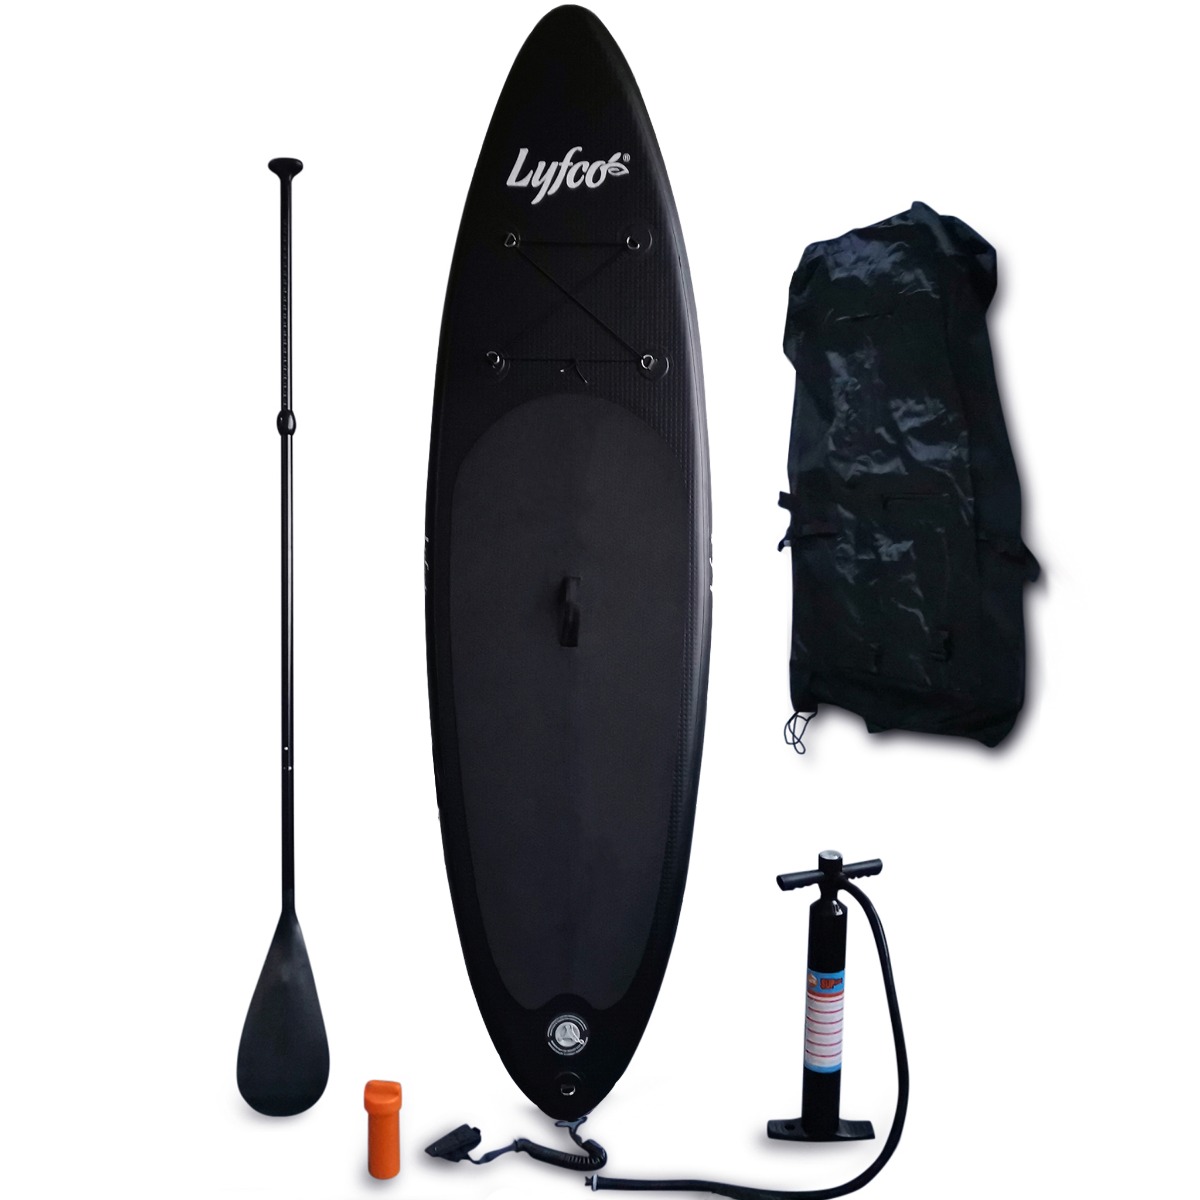 SUP-bräda 2,7m | Uppblåsbar paddle board | 15psi | Lyfco